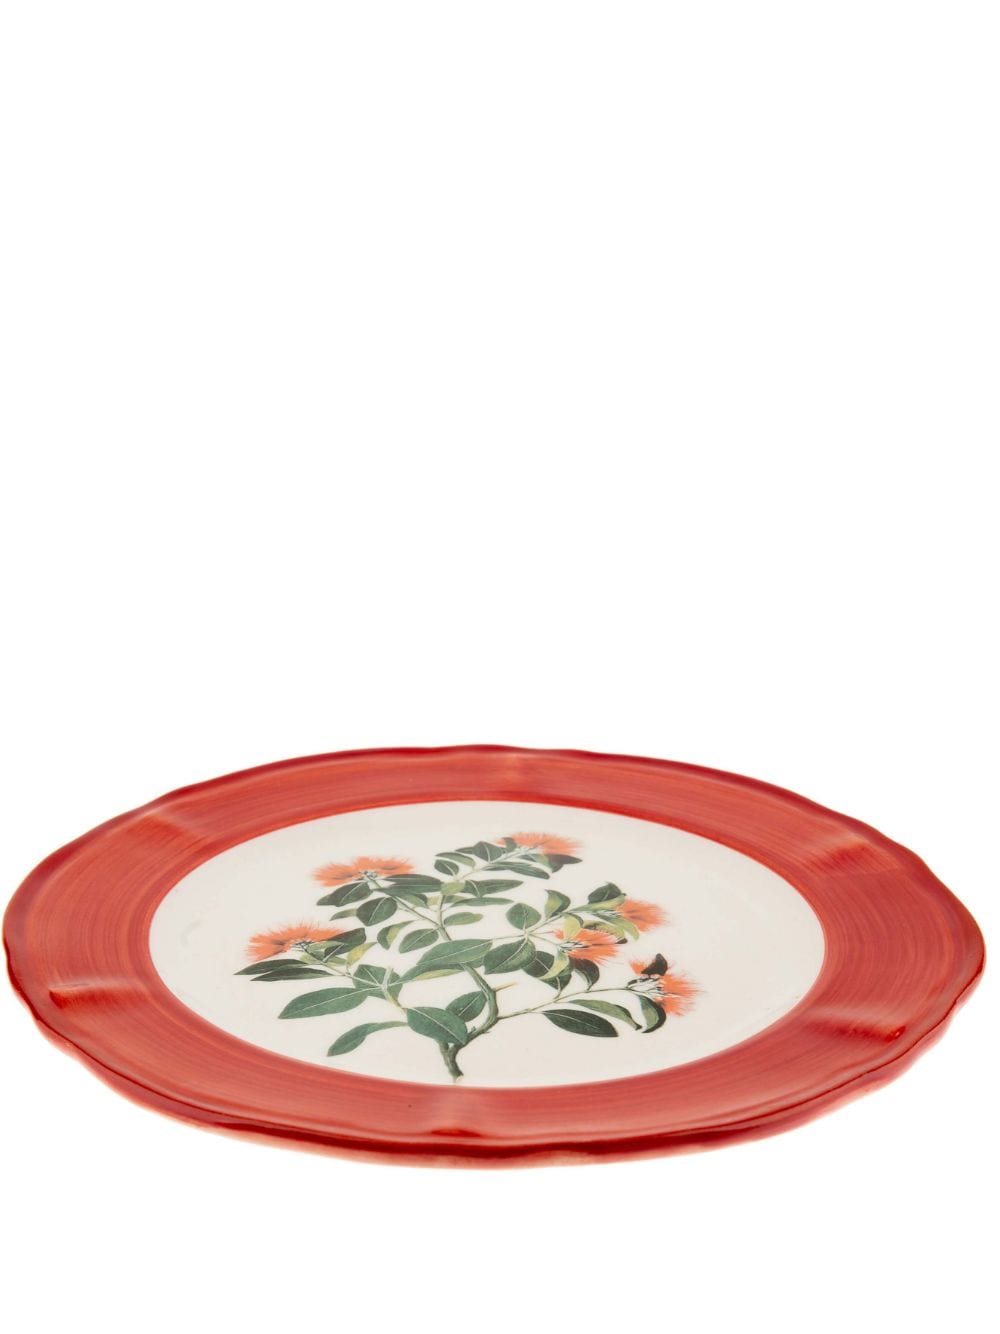 Les-ottomans Sultan Garden Porcelain Dinner Plate In Red